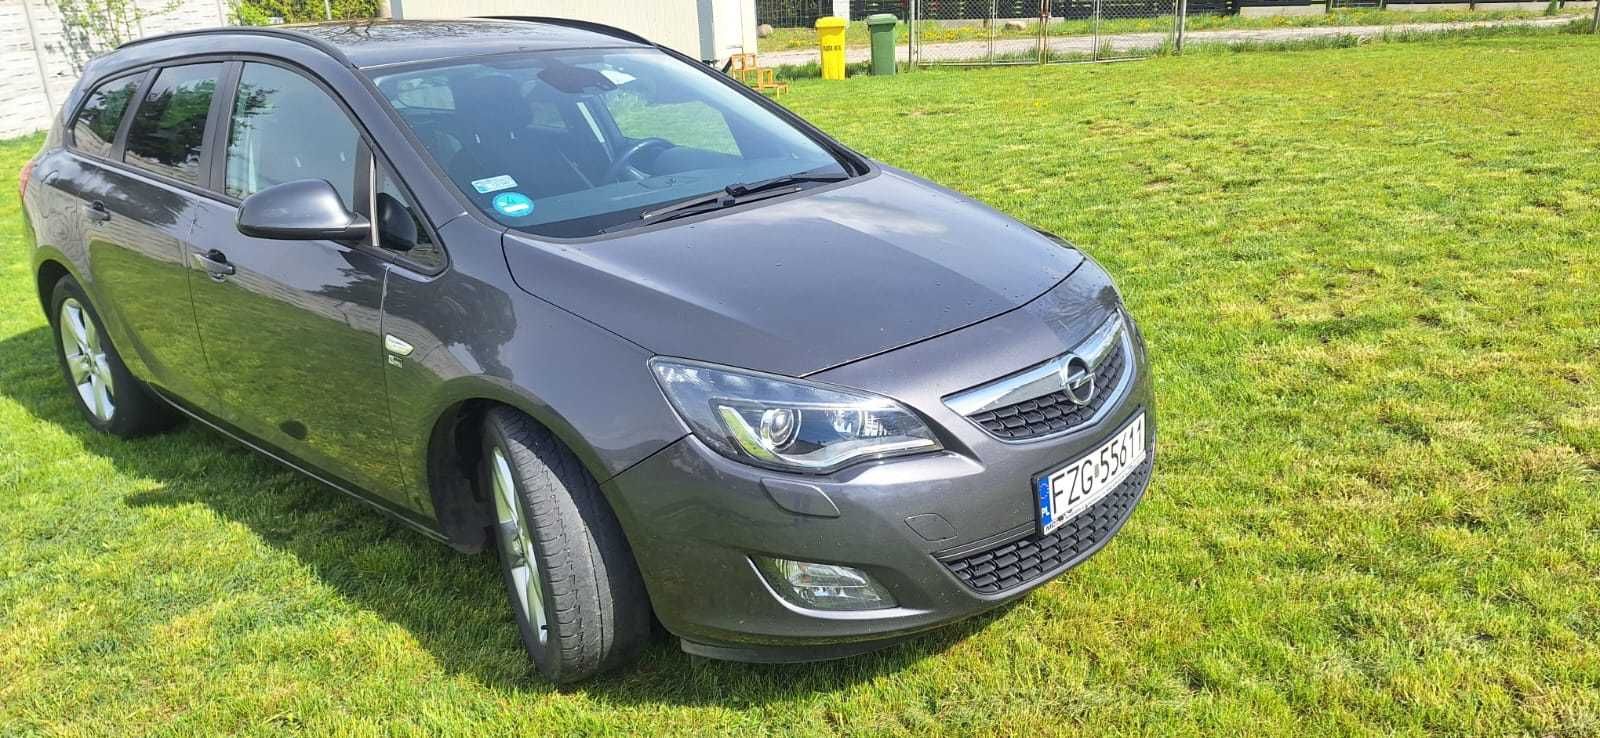 Opel Astra J 1.7cdti